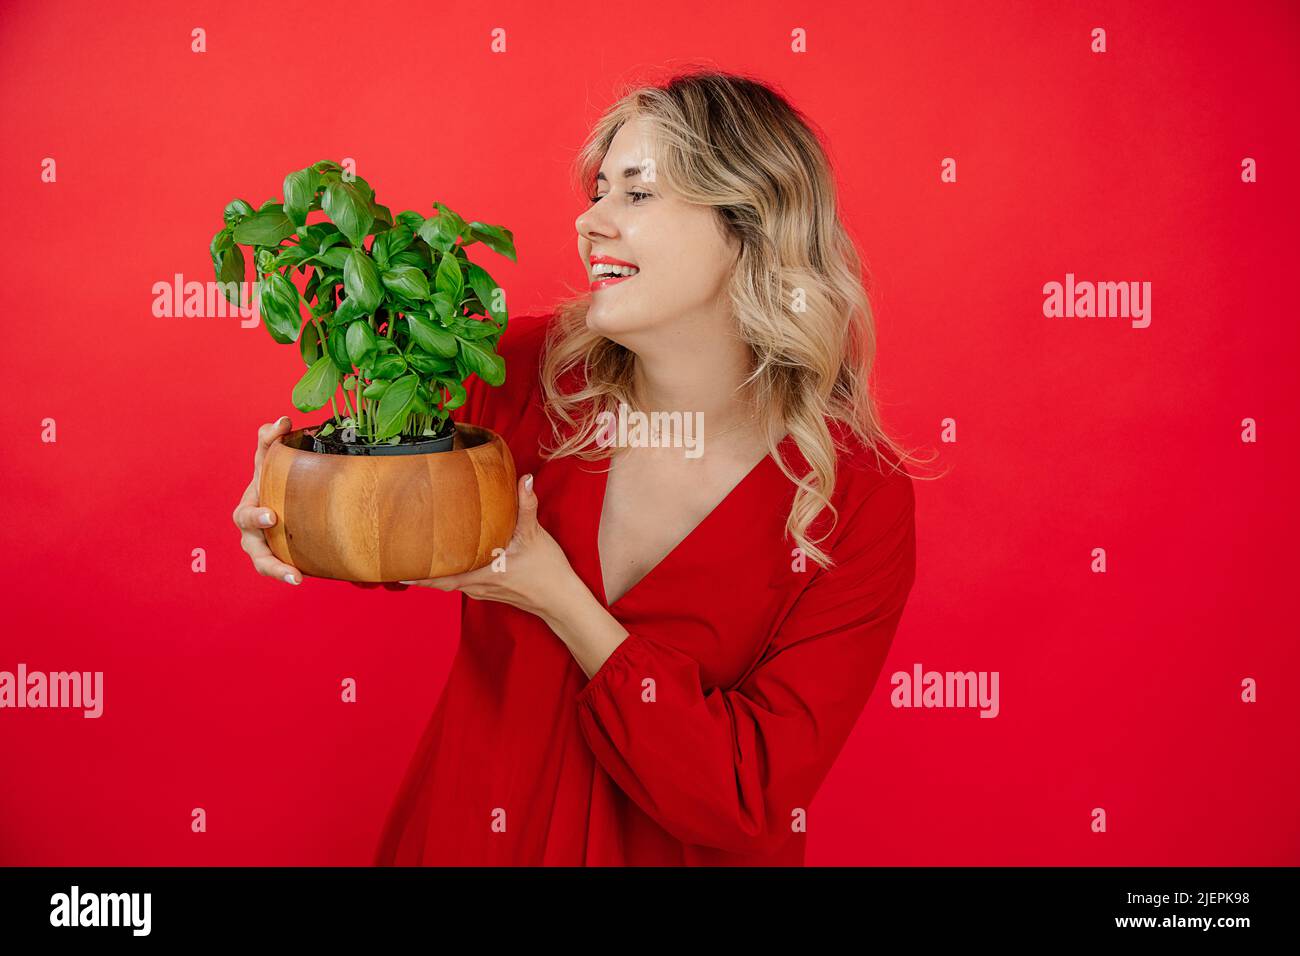 Donna bionda sorridente che sorride la pianta del basilico su sfondo rosso in studio, sorridendo il toothy, guardando il basilico Foto Stock